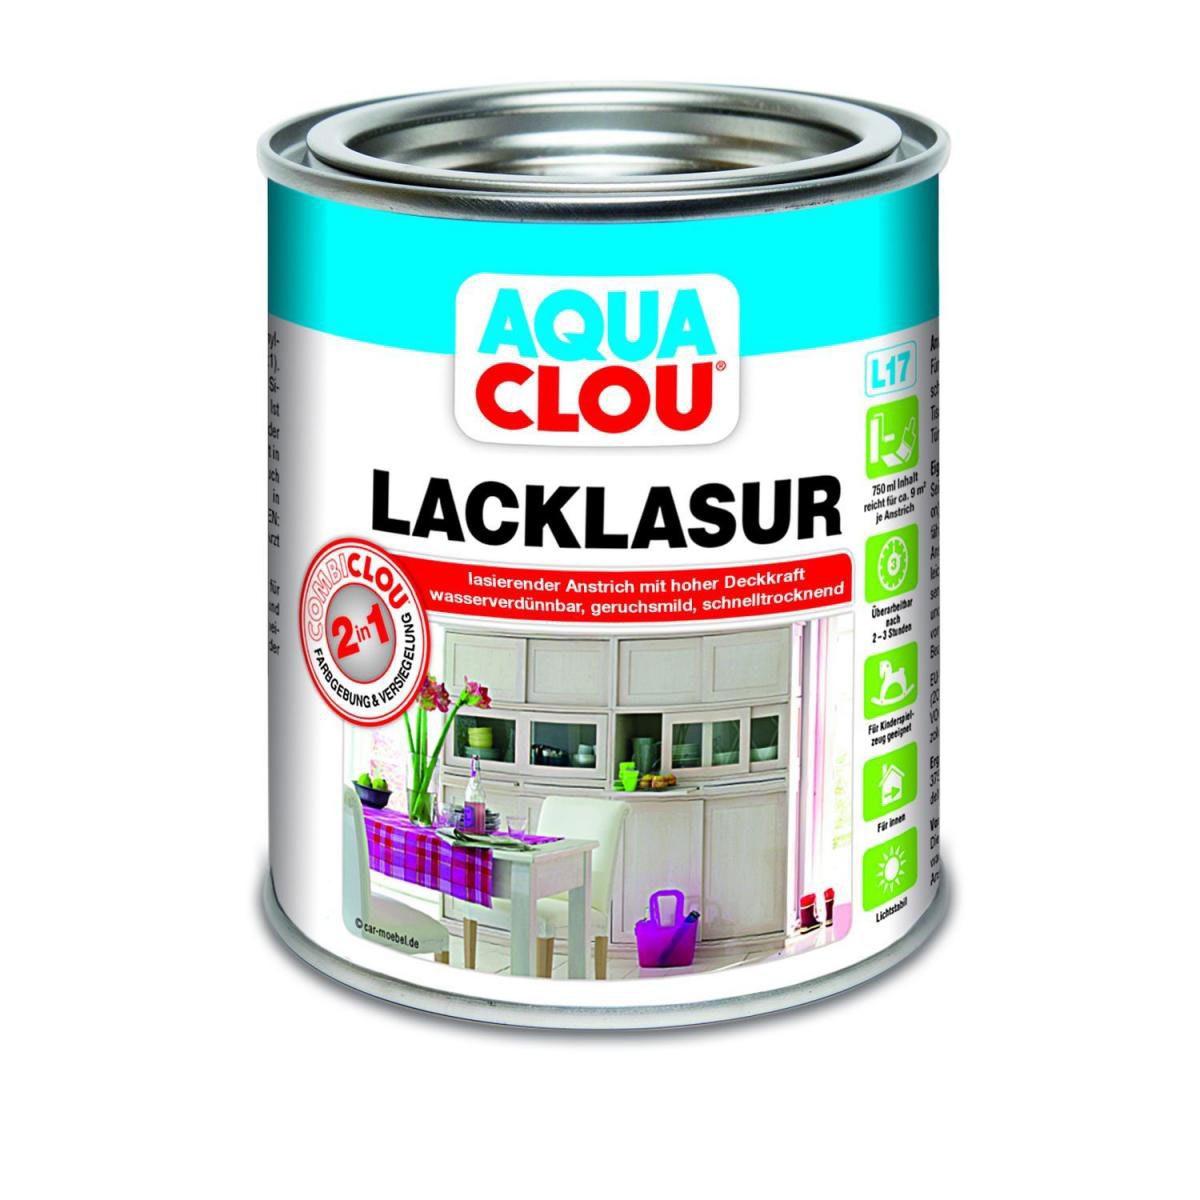 Clou L17 Aqua Lacklasur „Weiß“, 750 ml